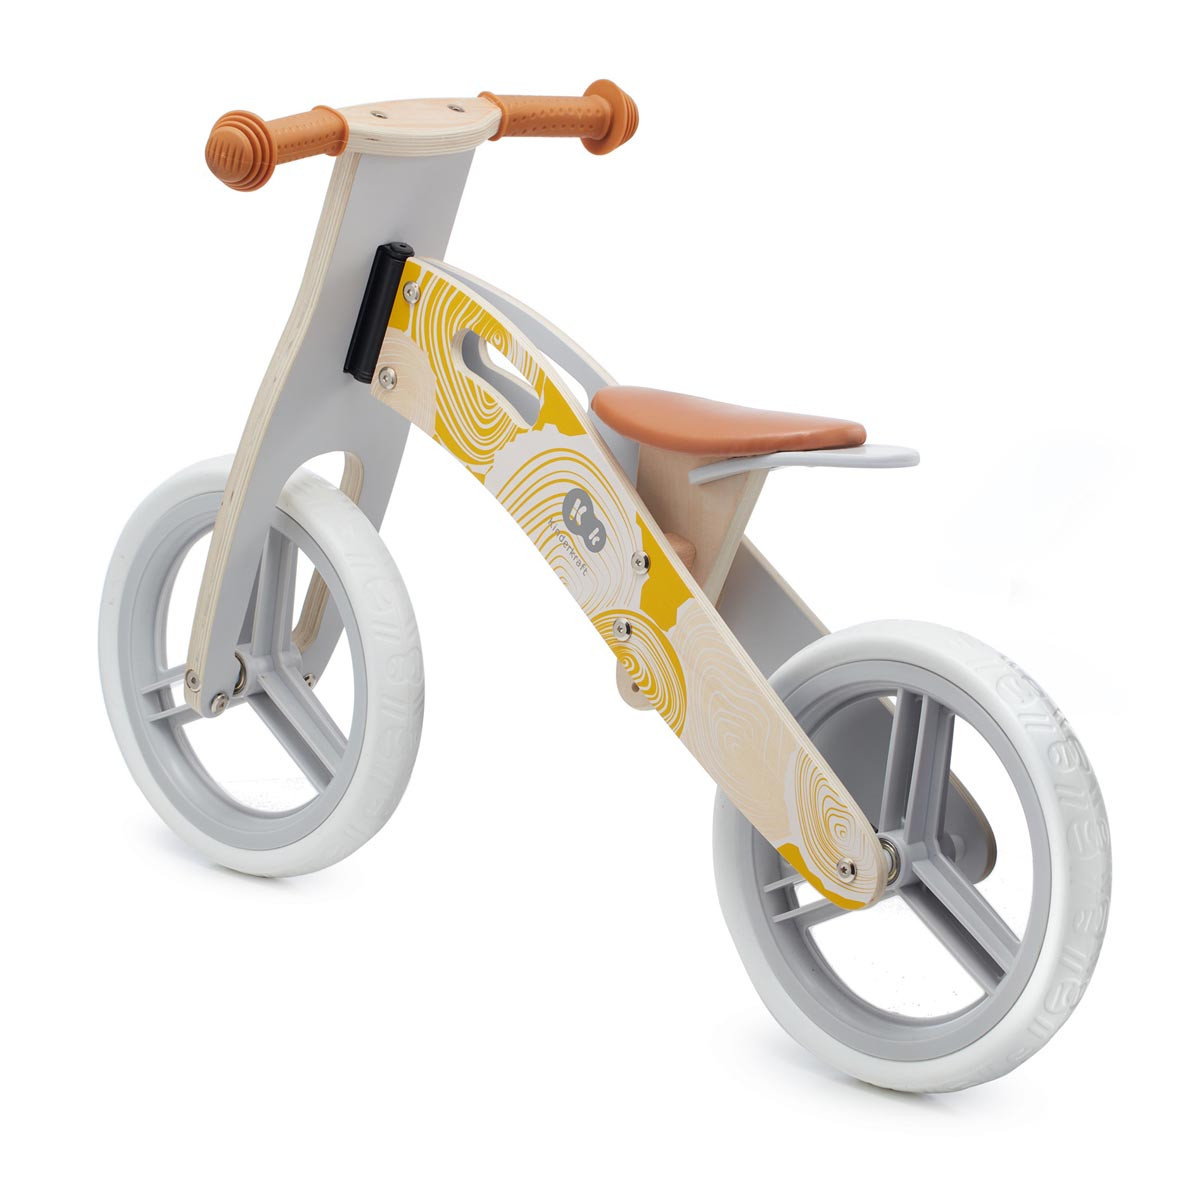 Bicicleta de equilibrio de madera sin pedales, Kinderkraft Runner. Apta para niños a partir de los 3 años.